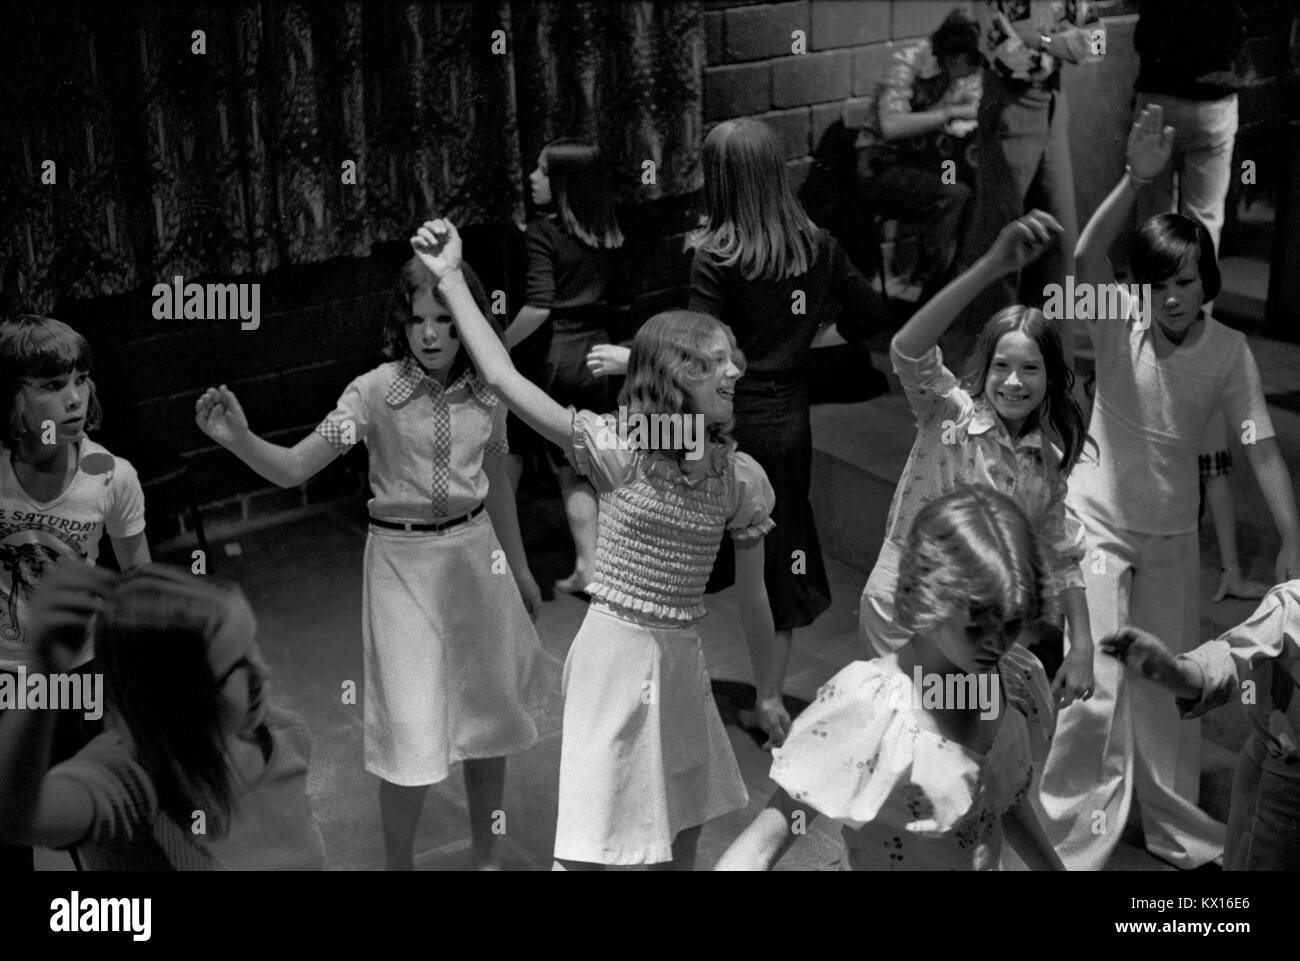 Disco danse des années 1970 au Royaume-Uni au Timebridge Youth club. Des adolescentes dansant dans un groupe ensemble pour la musique disco The Wells Fargo Disco. Chells, Stevenage, Hertfordshire. 1975 Angleterre HOMER SYKES. Banque D'Images